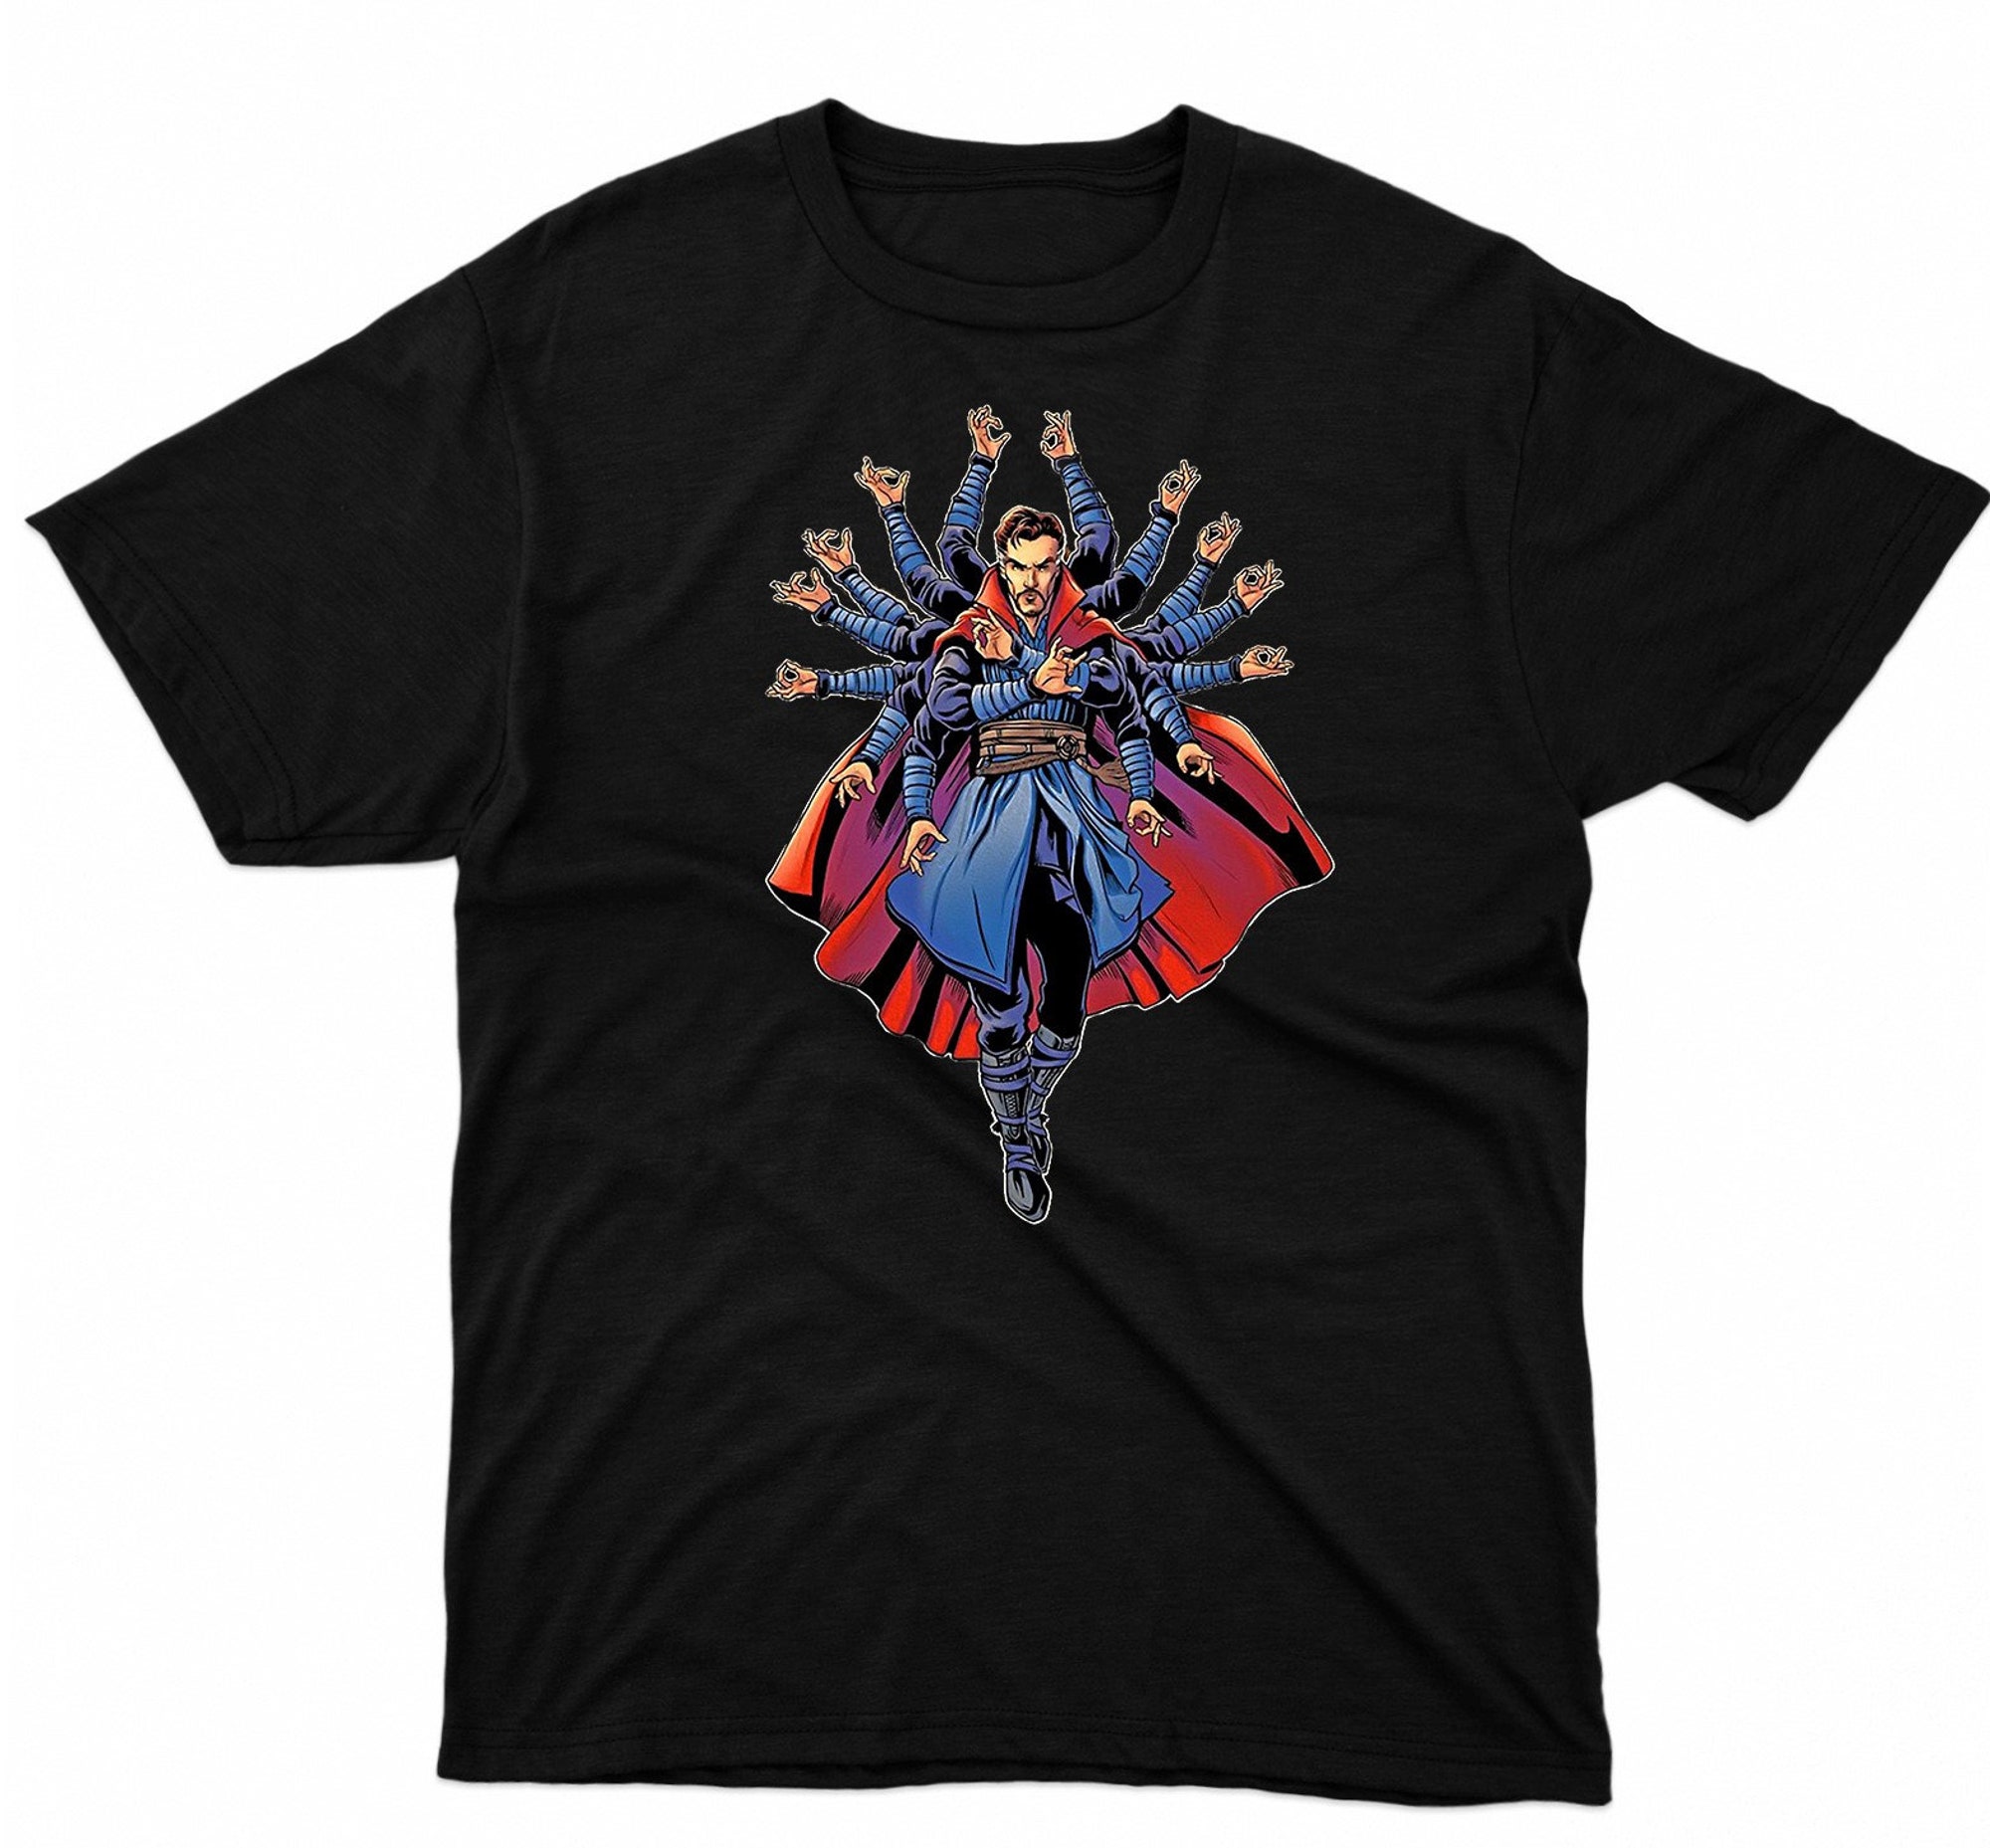 Discover Dr Strange T-Shirt, Avengers Shirt